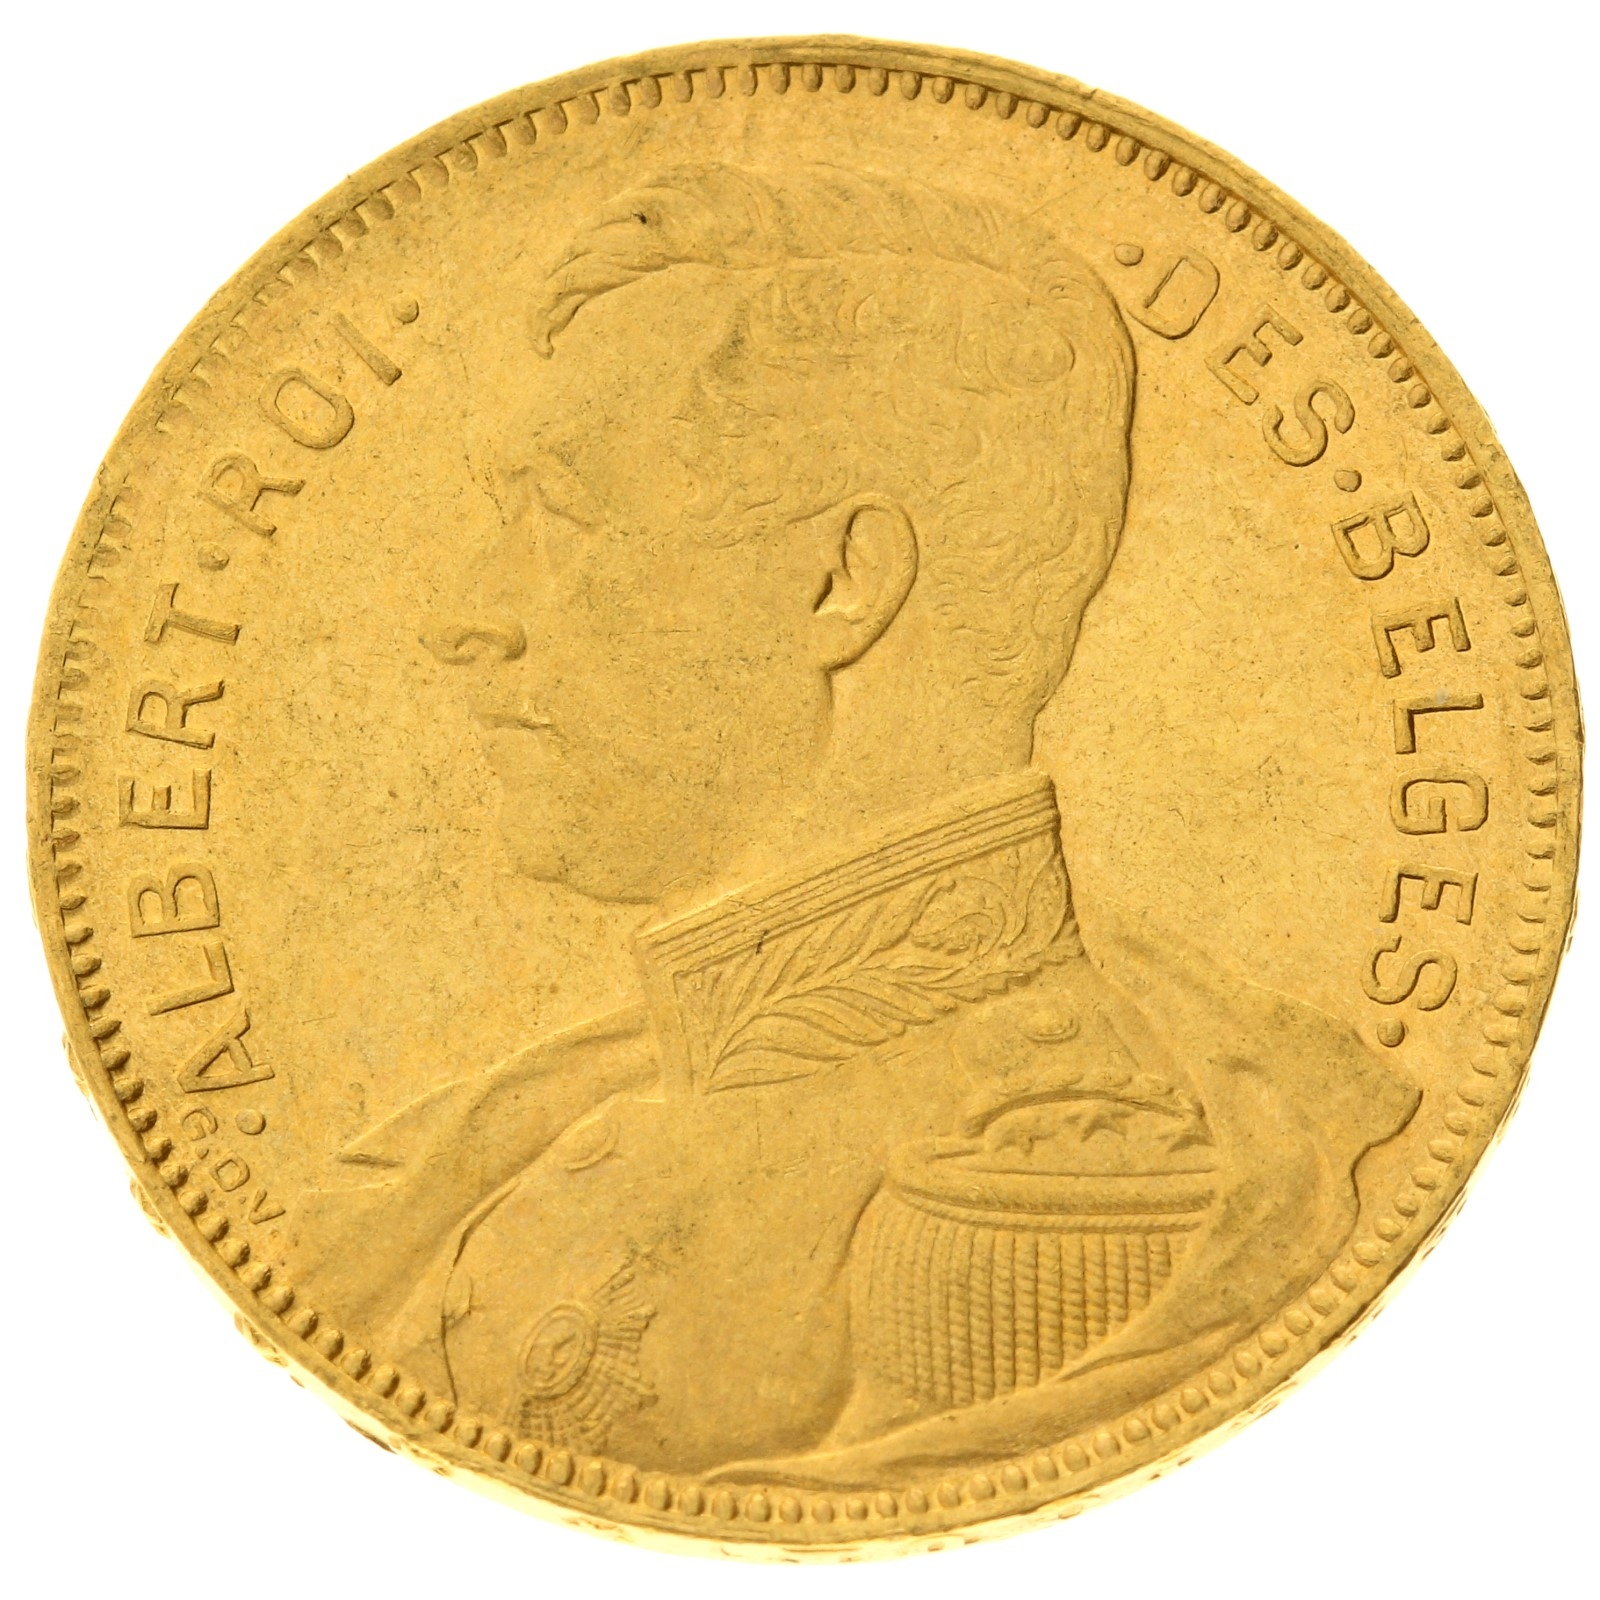 Belgium - 20 Francs - 1914 - Albert I